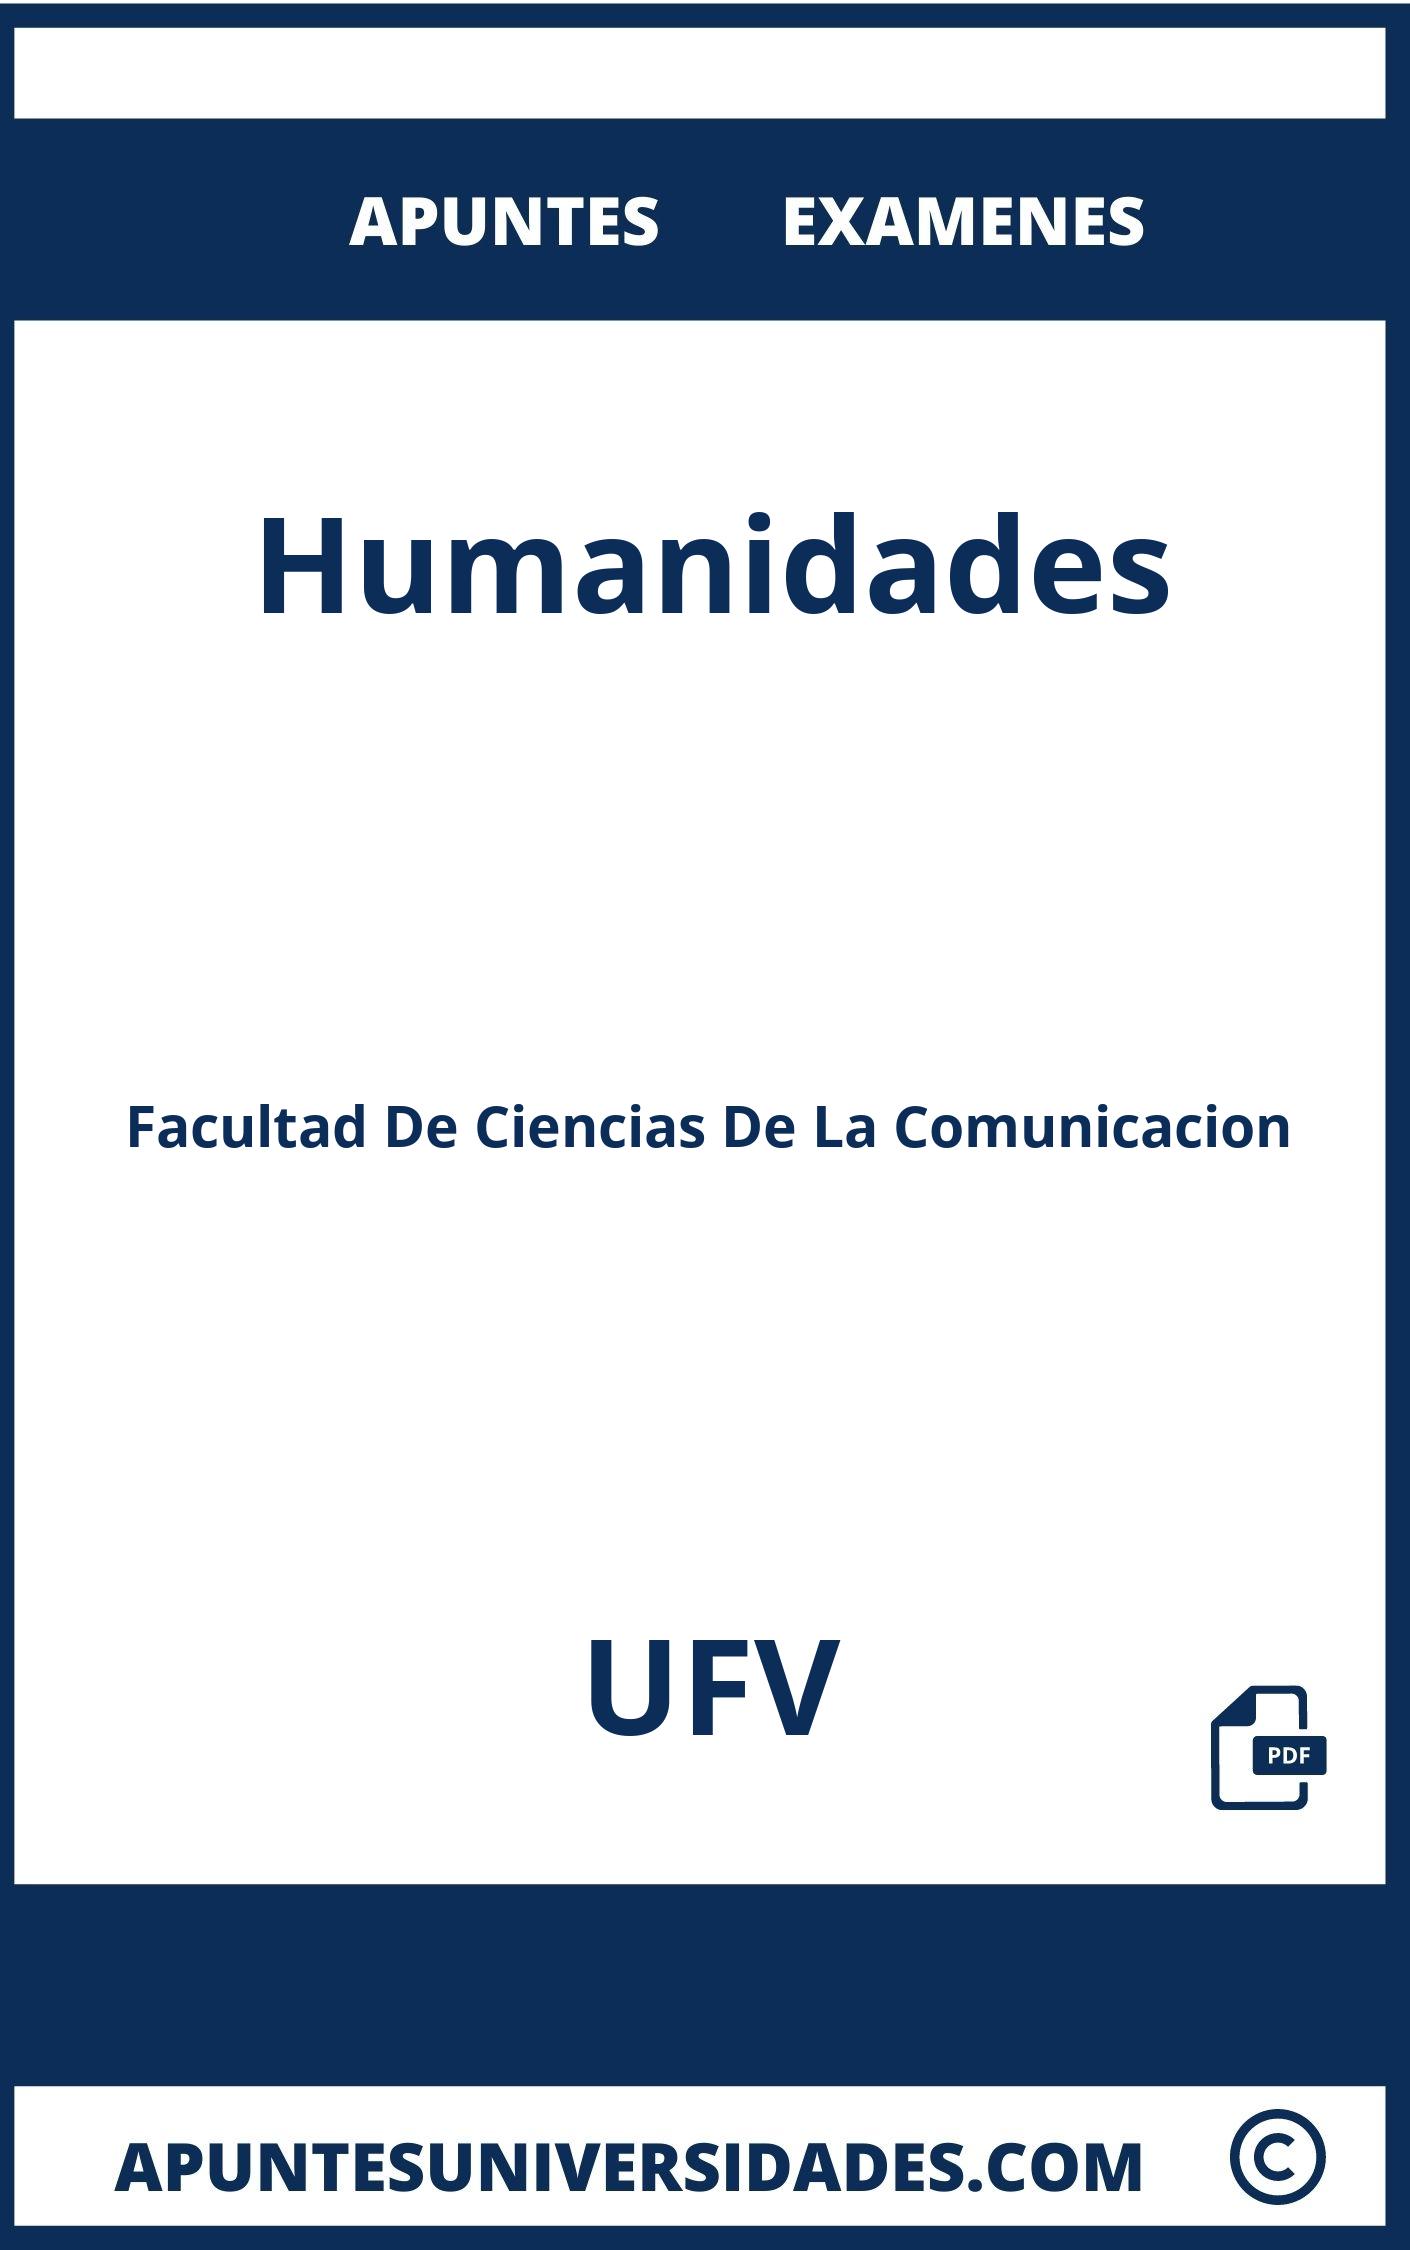 Apuntes y Examenes Humanidades UFV